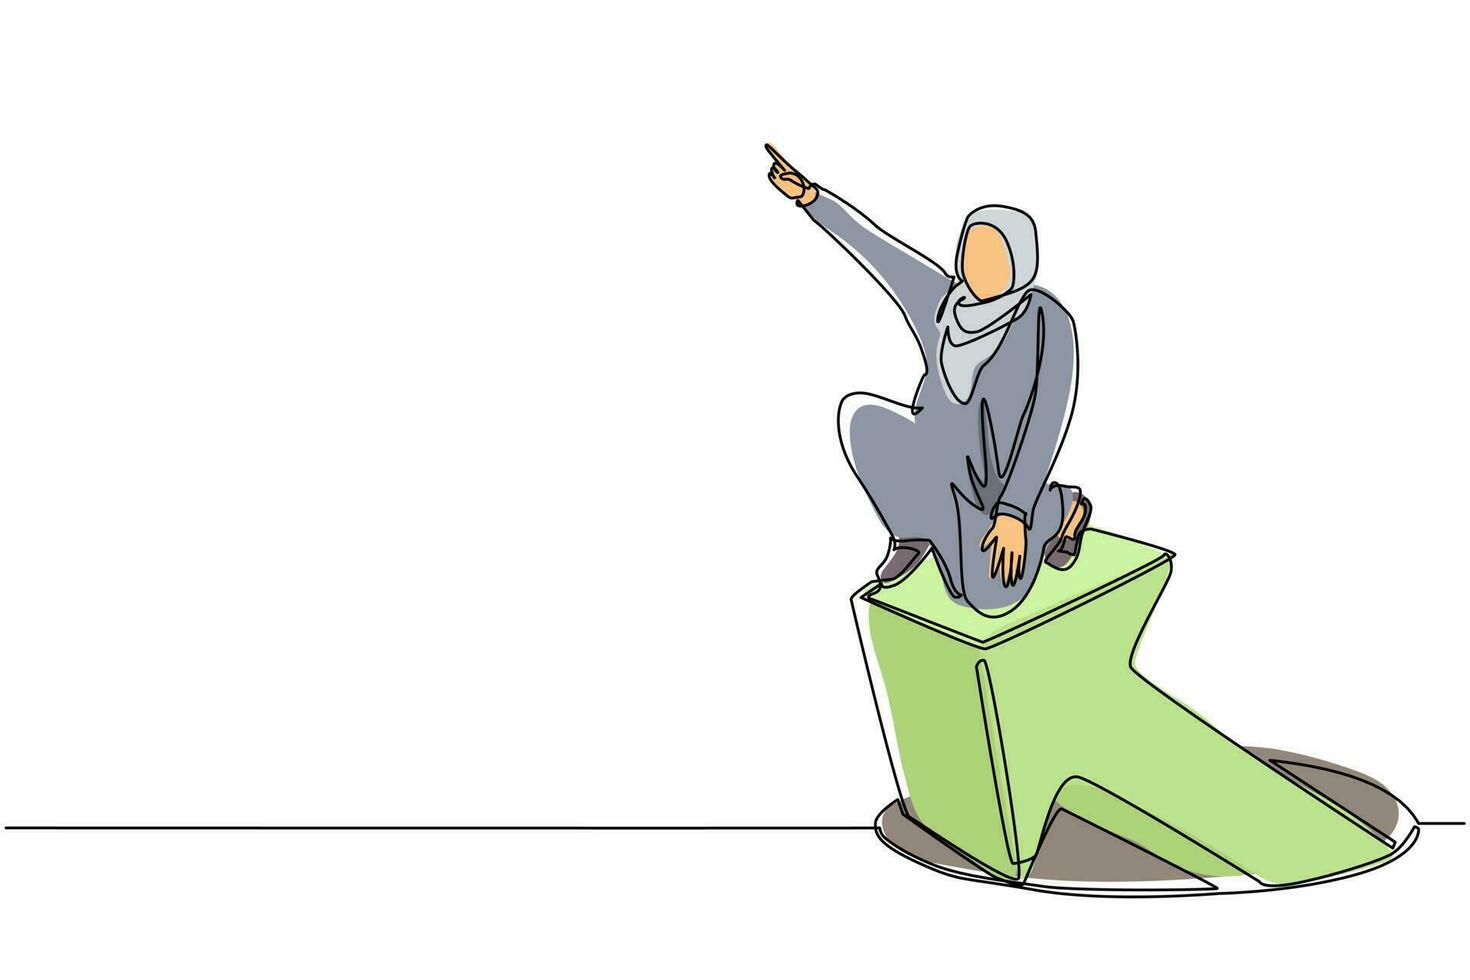 kontinuerlig en rad ritning arabisk affärskvinna stående på pilar kommer ut ur hål. kvinna ledande finansiell graf stiger från hål. affärstillväxt. enkel rad rita design vektorillustration vektor